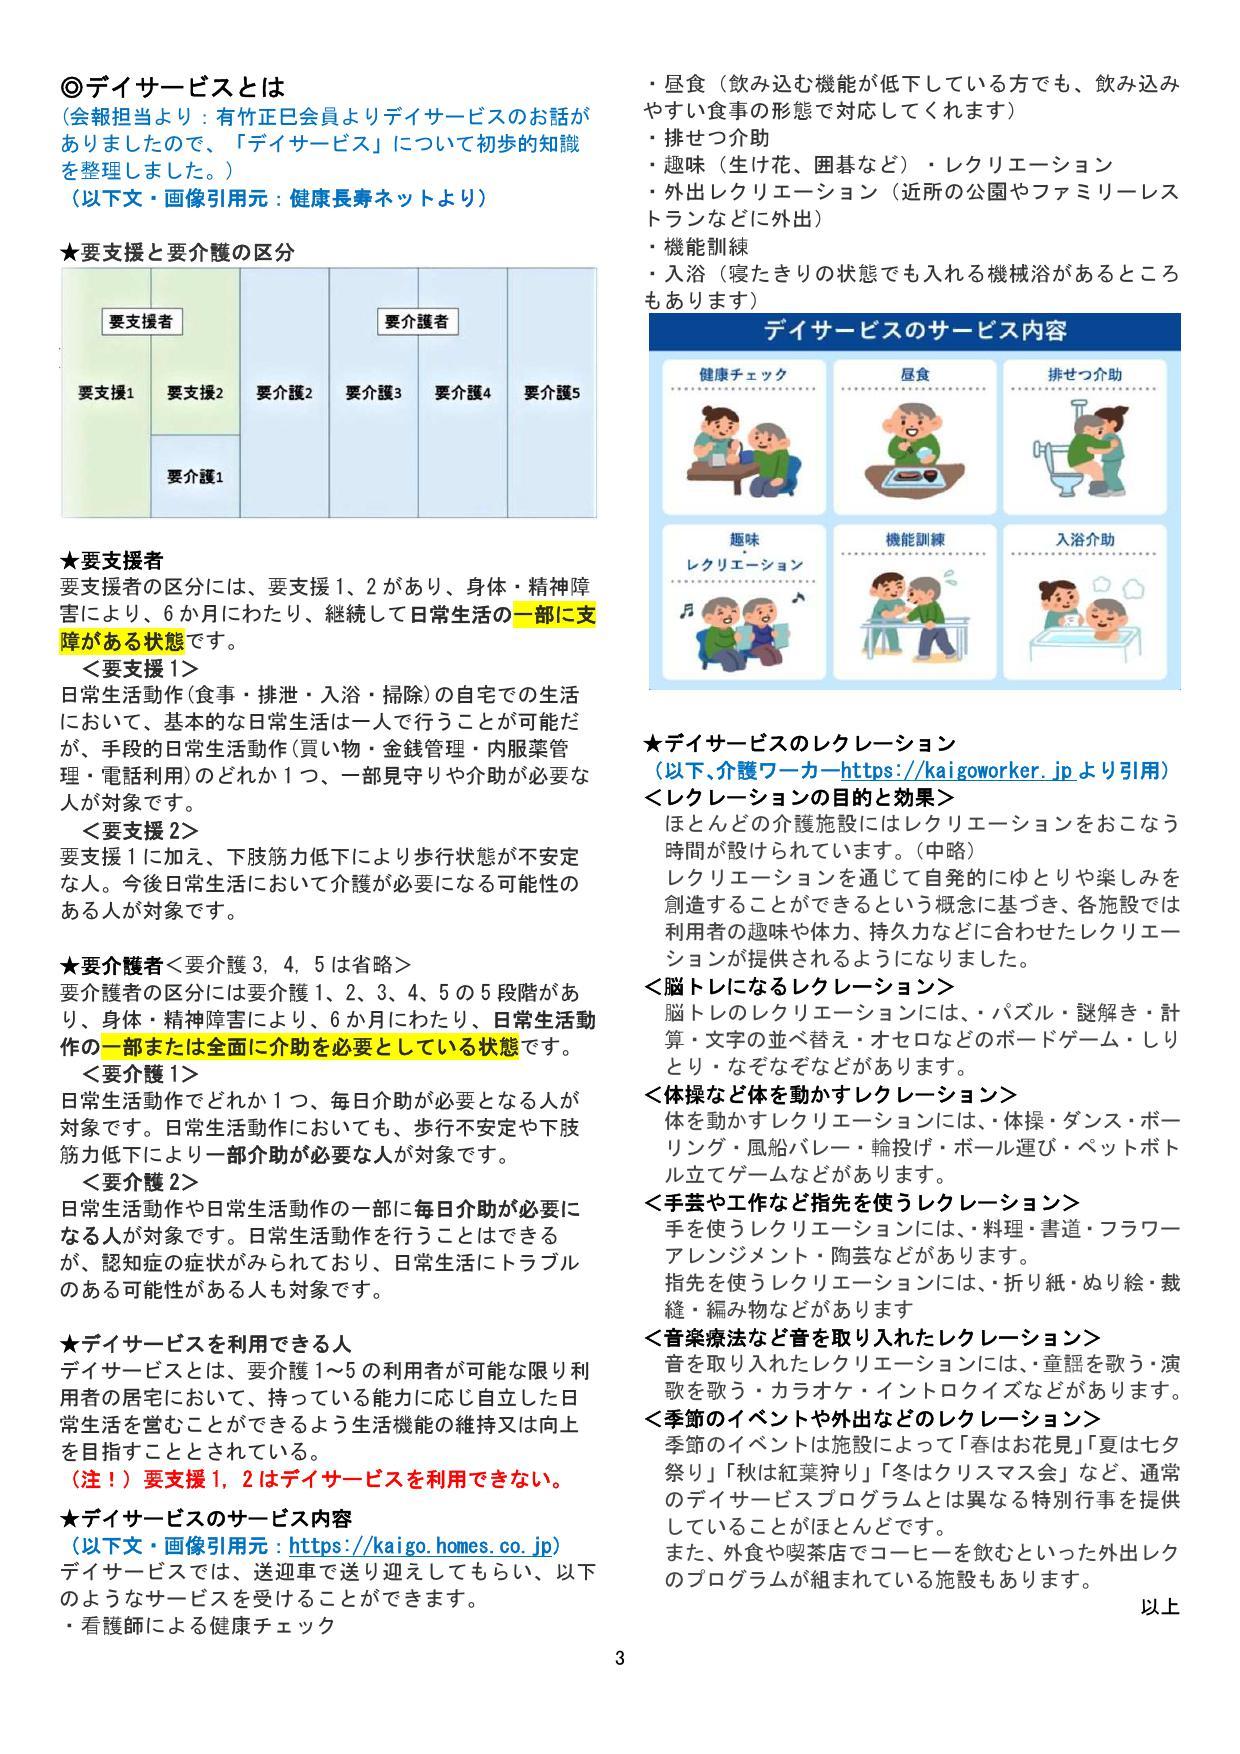 大阪プロバスクラブ  会報第364号  2021年10月11日_f0186621_11463523.jpg